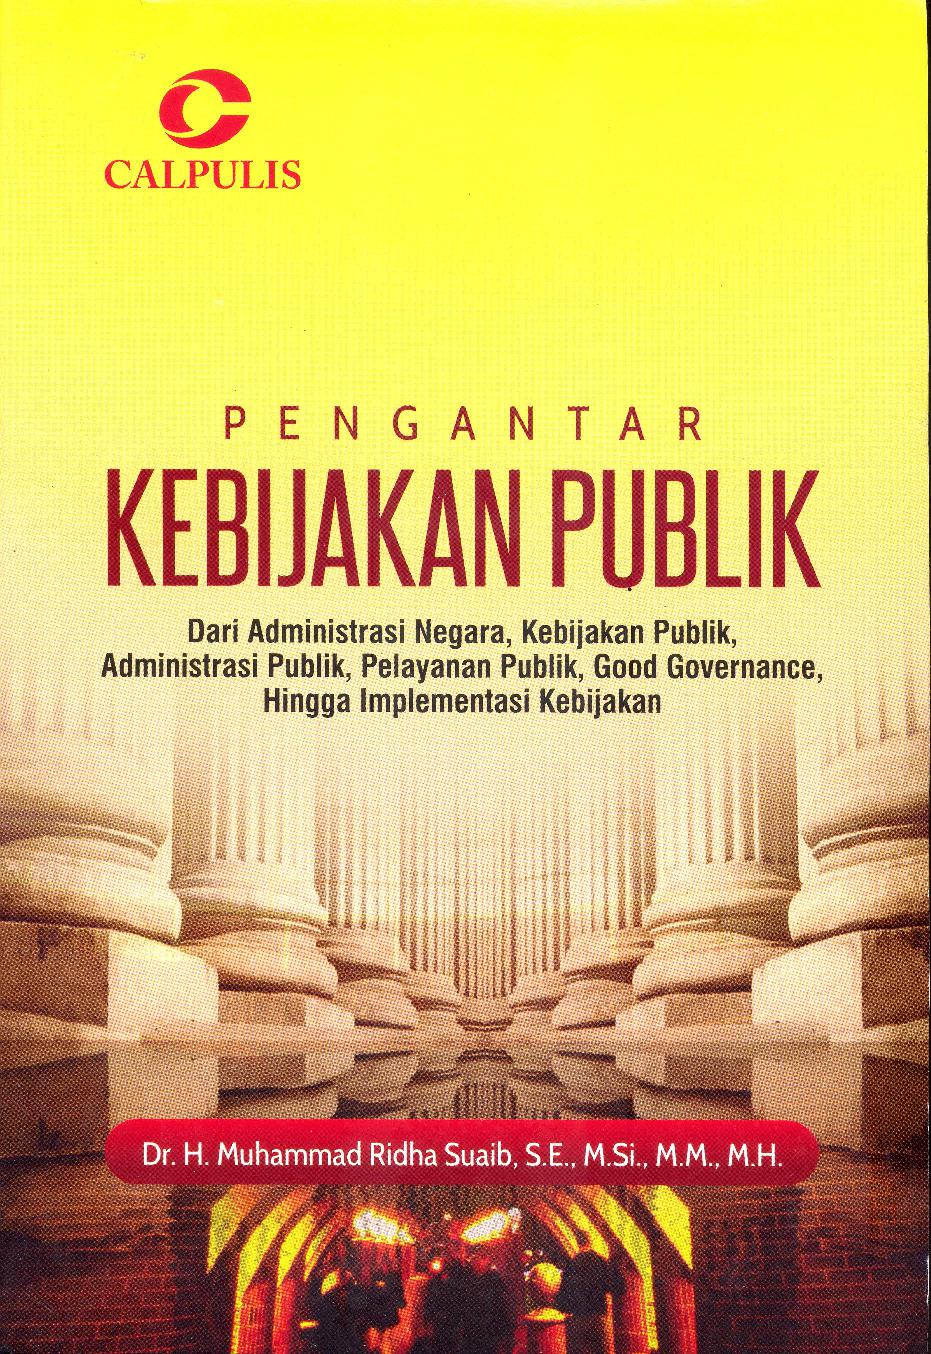 Pengantar kebijakan publik :  dari administrasi negara, kebijakan publik, administrasi publik, pelayanan publik, good governance, hingga implementasi kebijakan